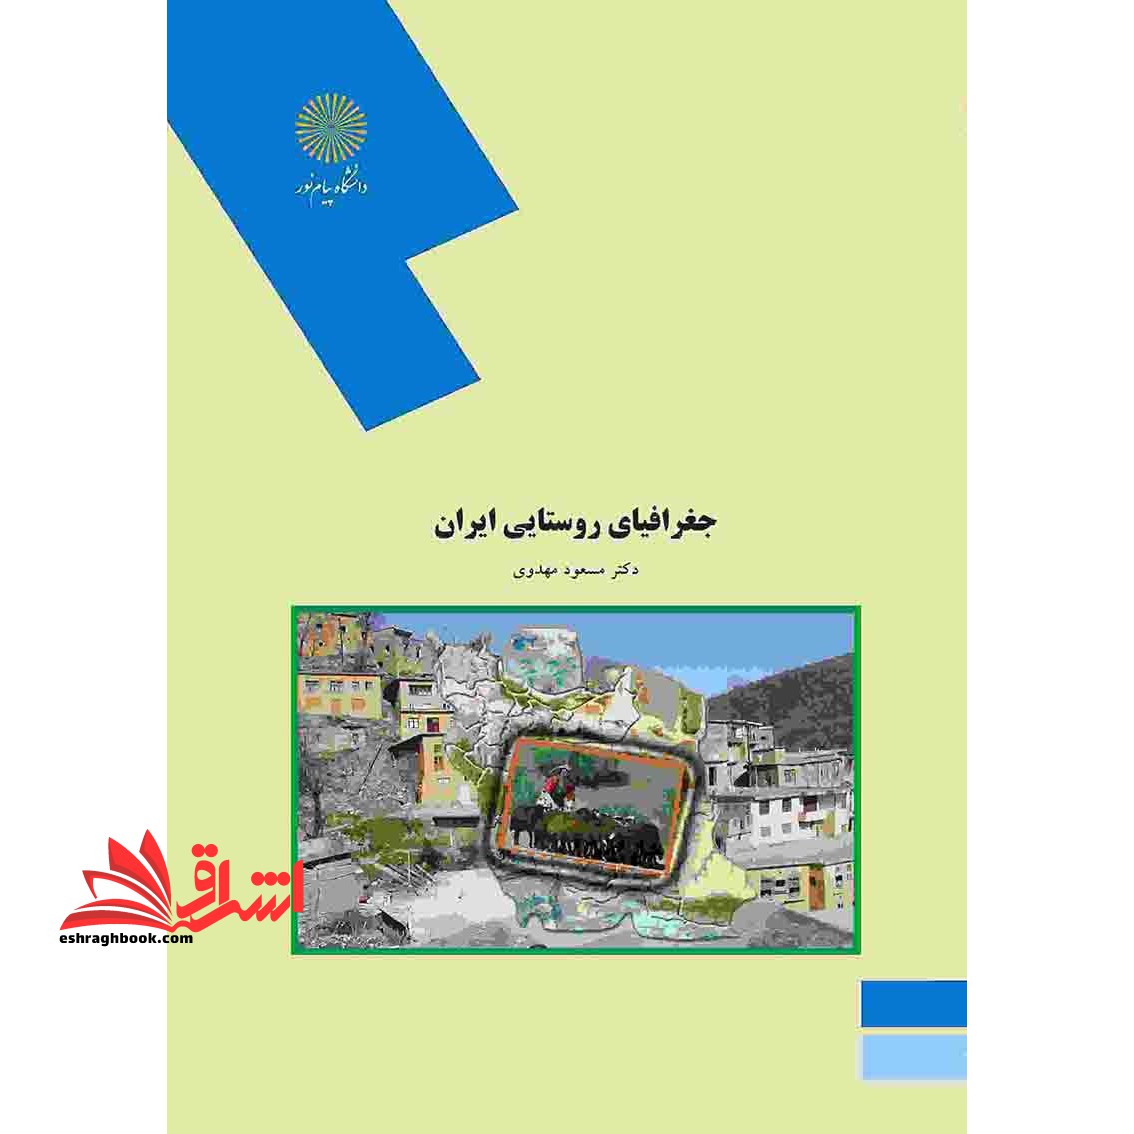 جغرافیای جمعیت ایران (رشته جغرافیا)